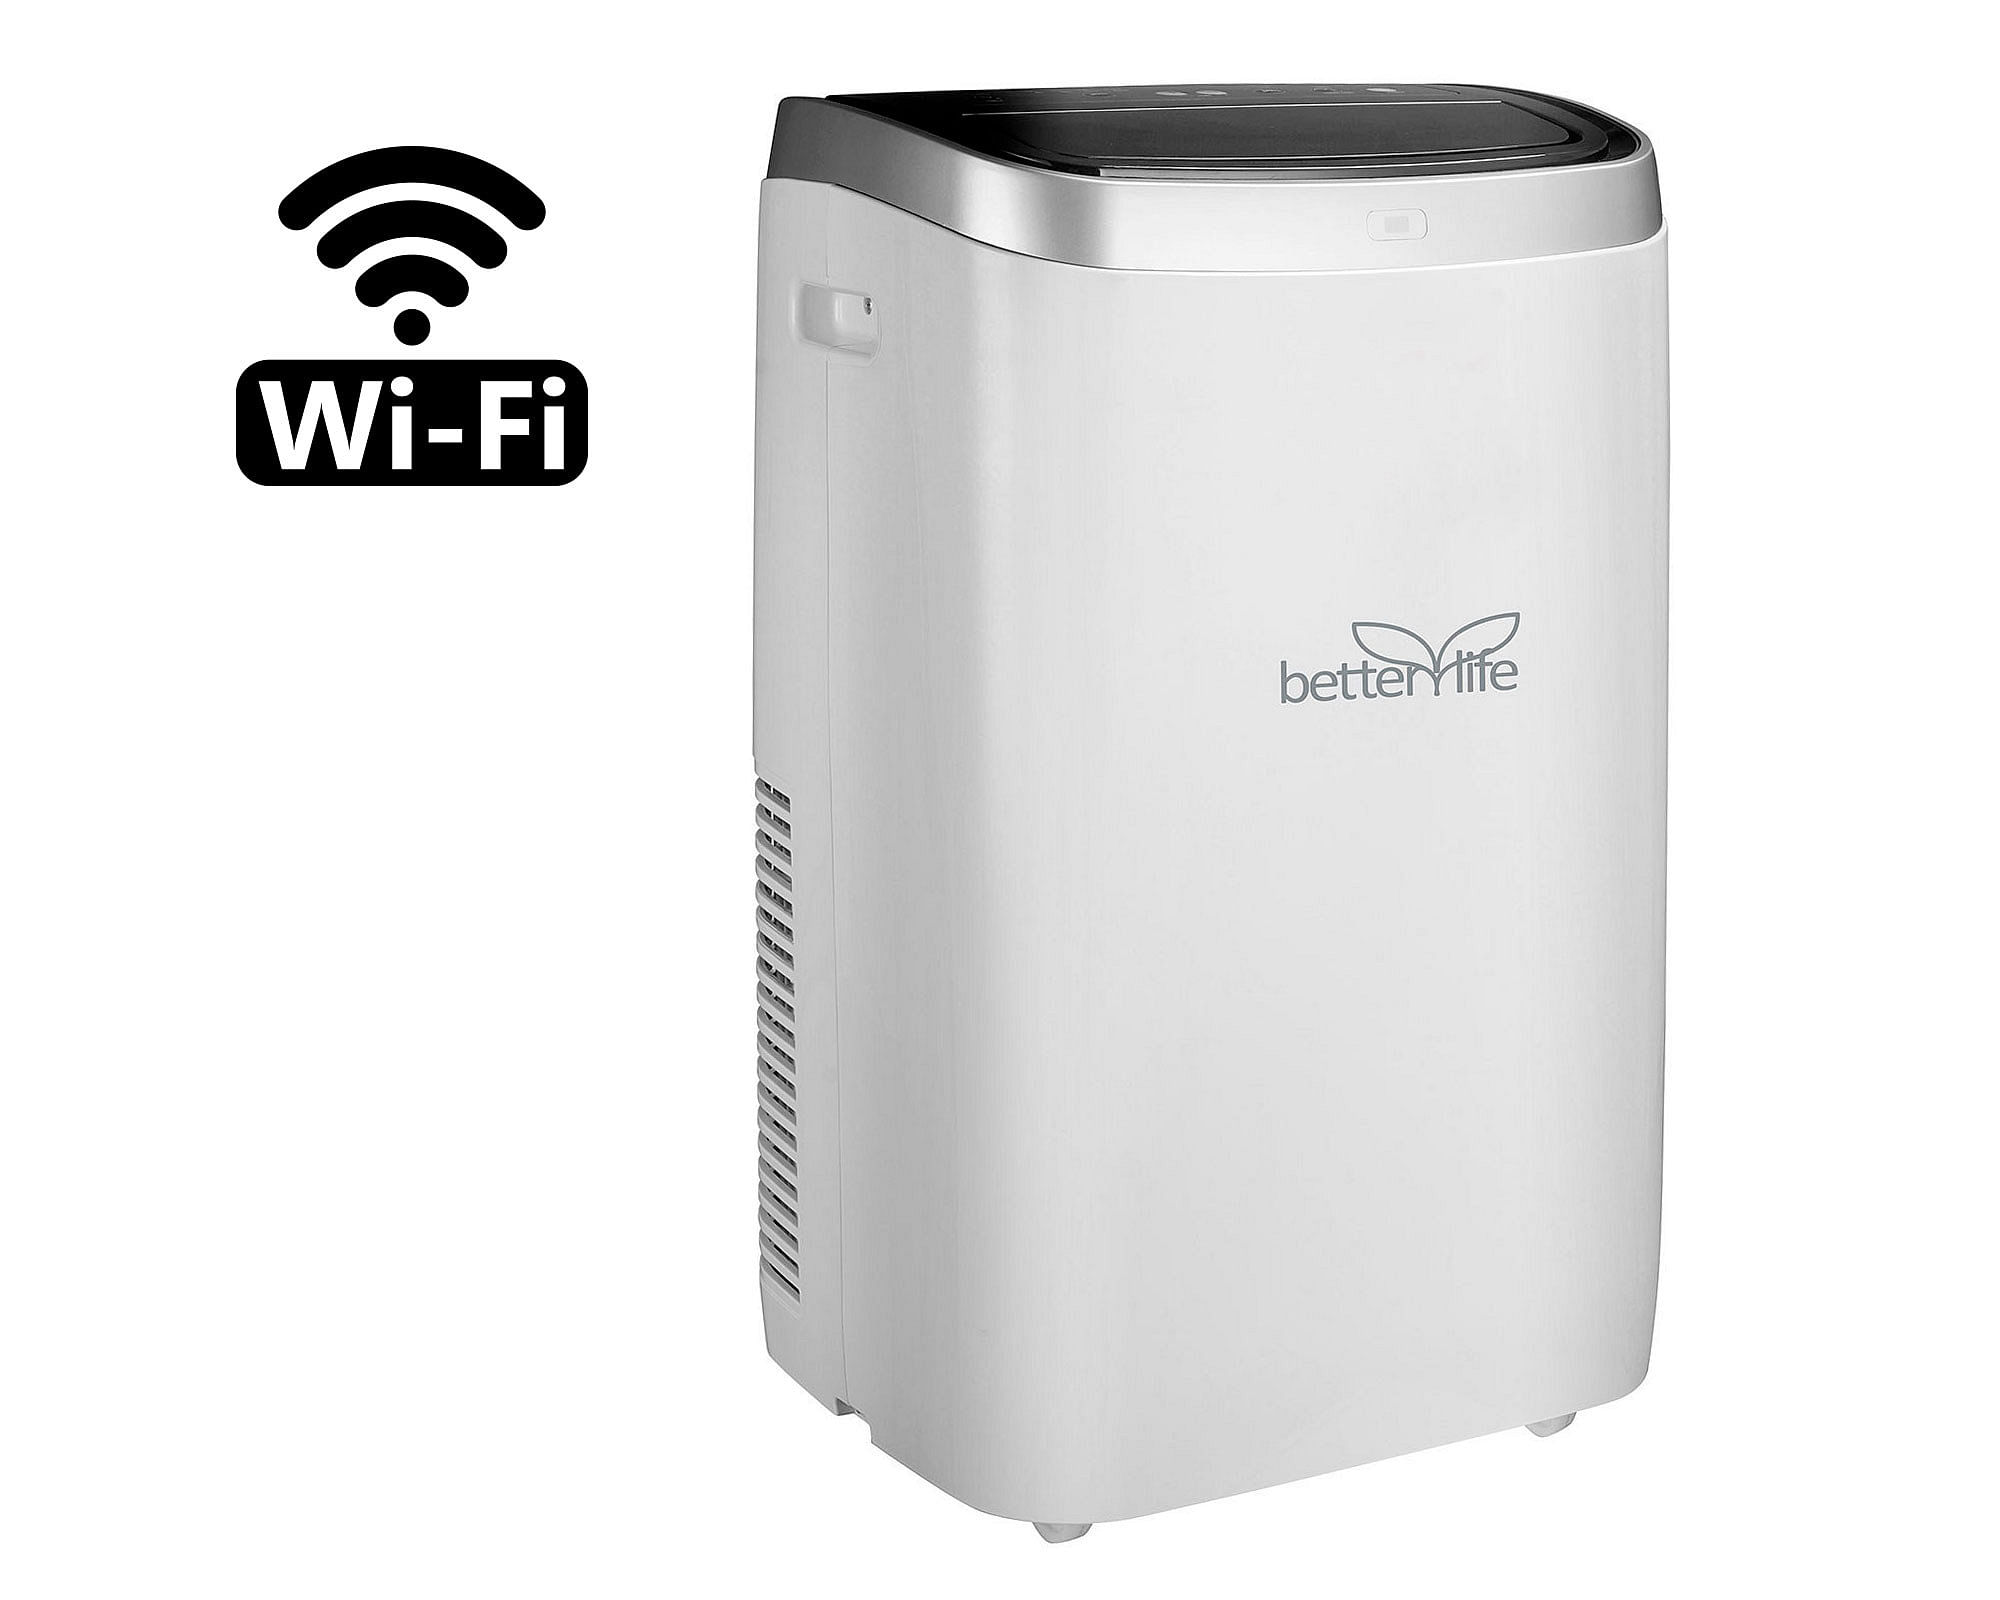 → Ventajas aire acondicionado portátil con wifi